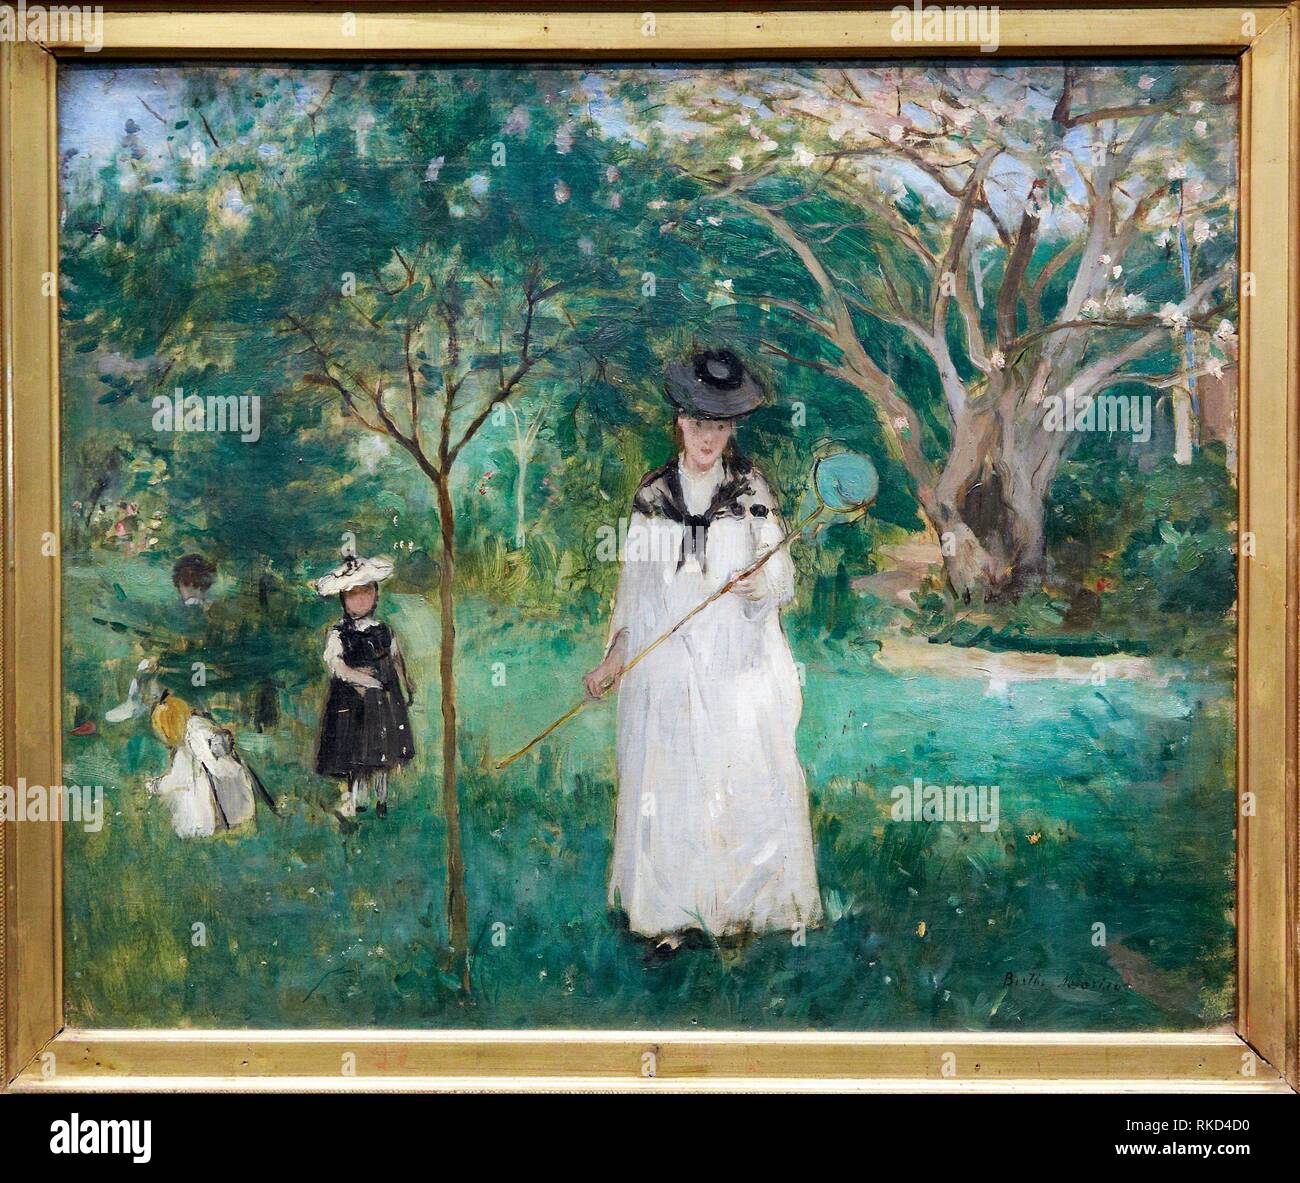 ''' Jagd auf Schmetterlinge'', die von Berthe Morisot, 1875, aus dem 19. Jahrhundert, Öl auf Leinwand. Musée d'Orsay. Museum Orsay. Paris. Frankreich. Stockfoto